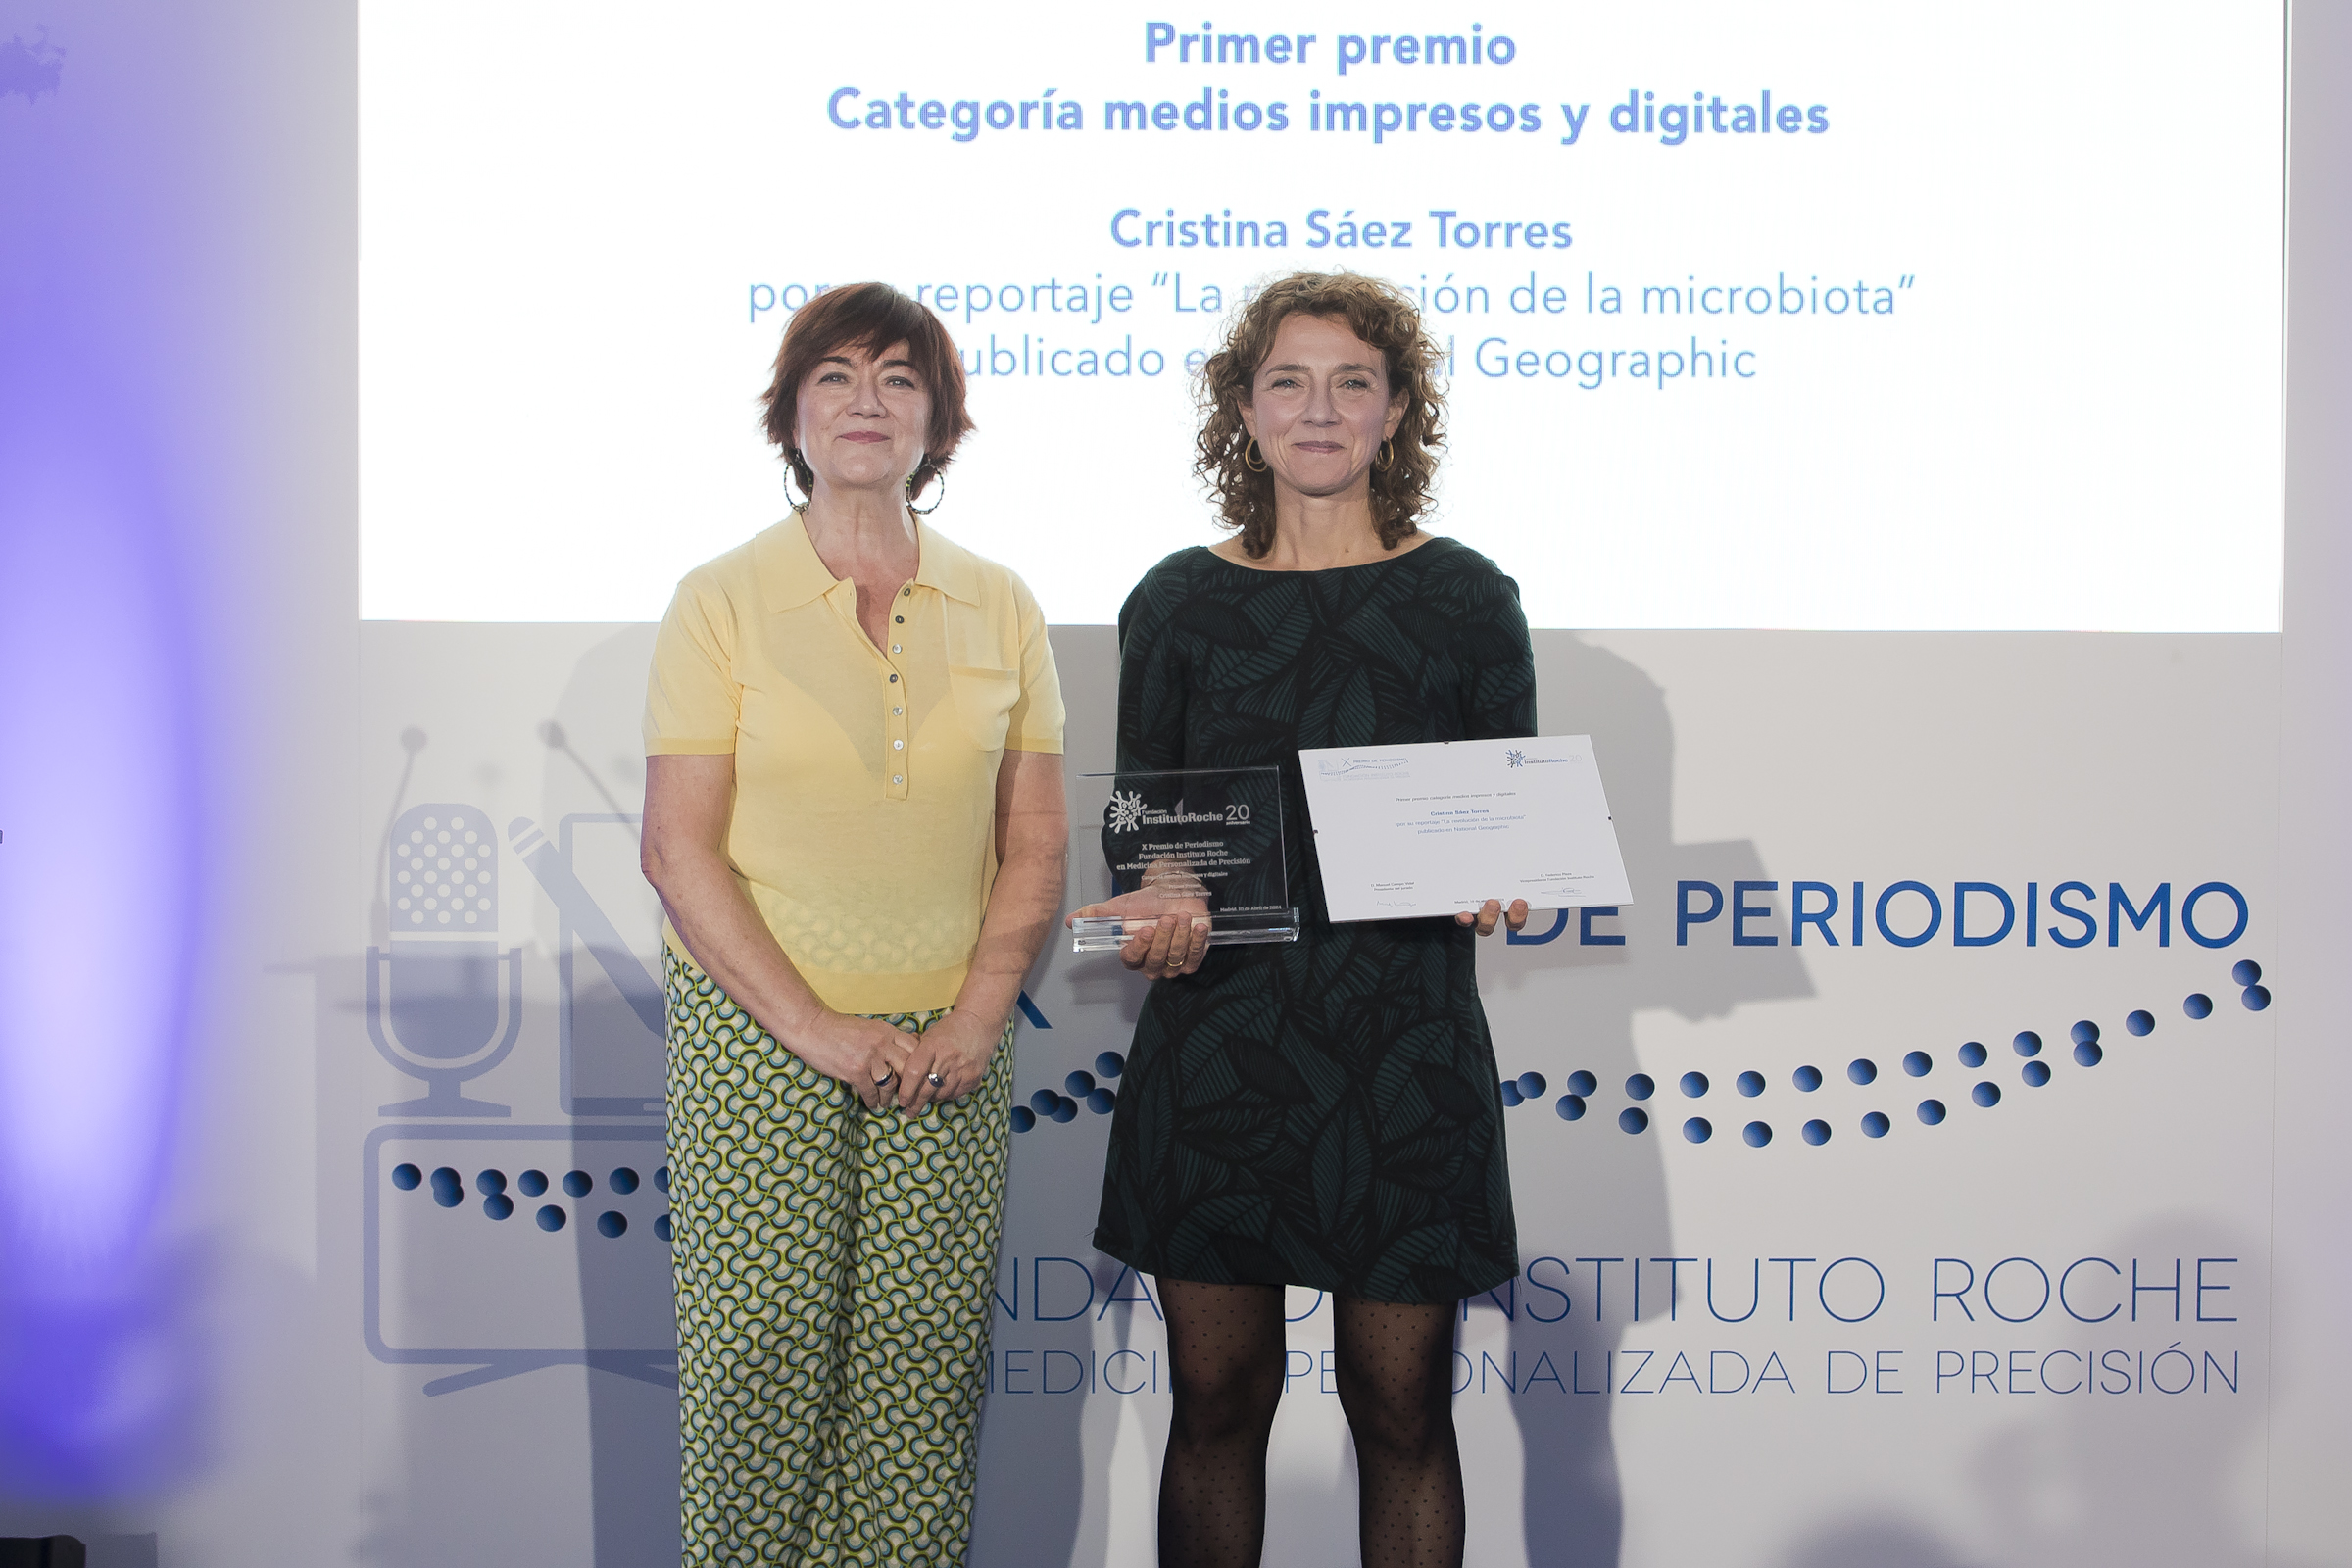 Coral Larrosa miembro del jurado, junto con Cristina Saez Torres ganadora del Primer Premio en medios impresos